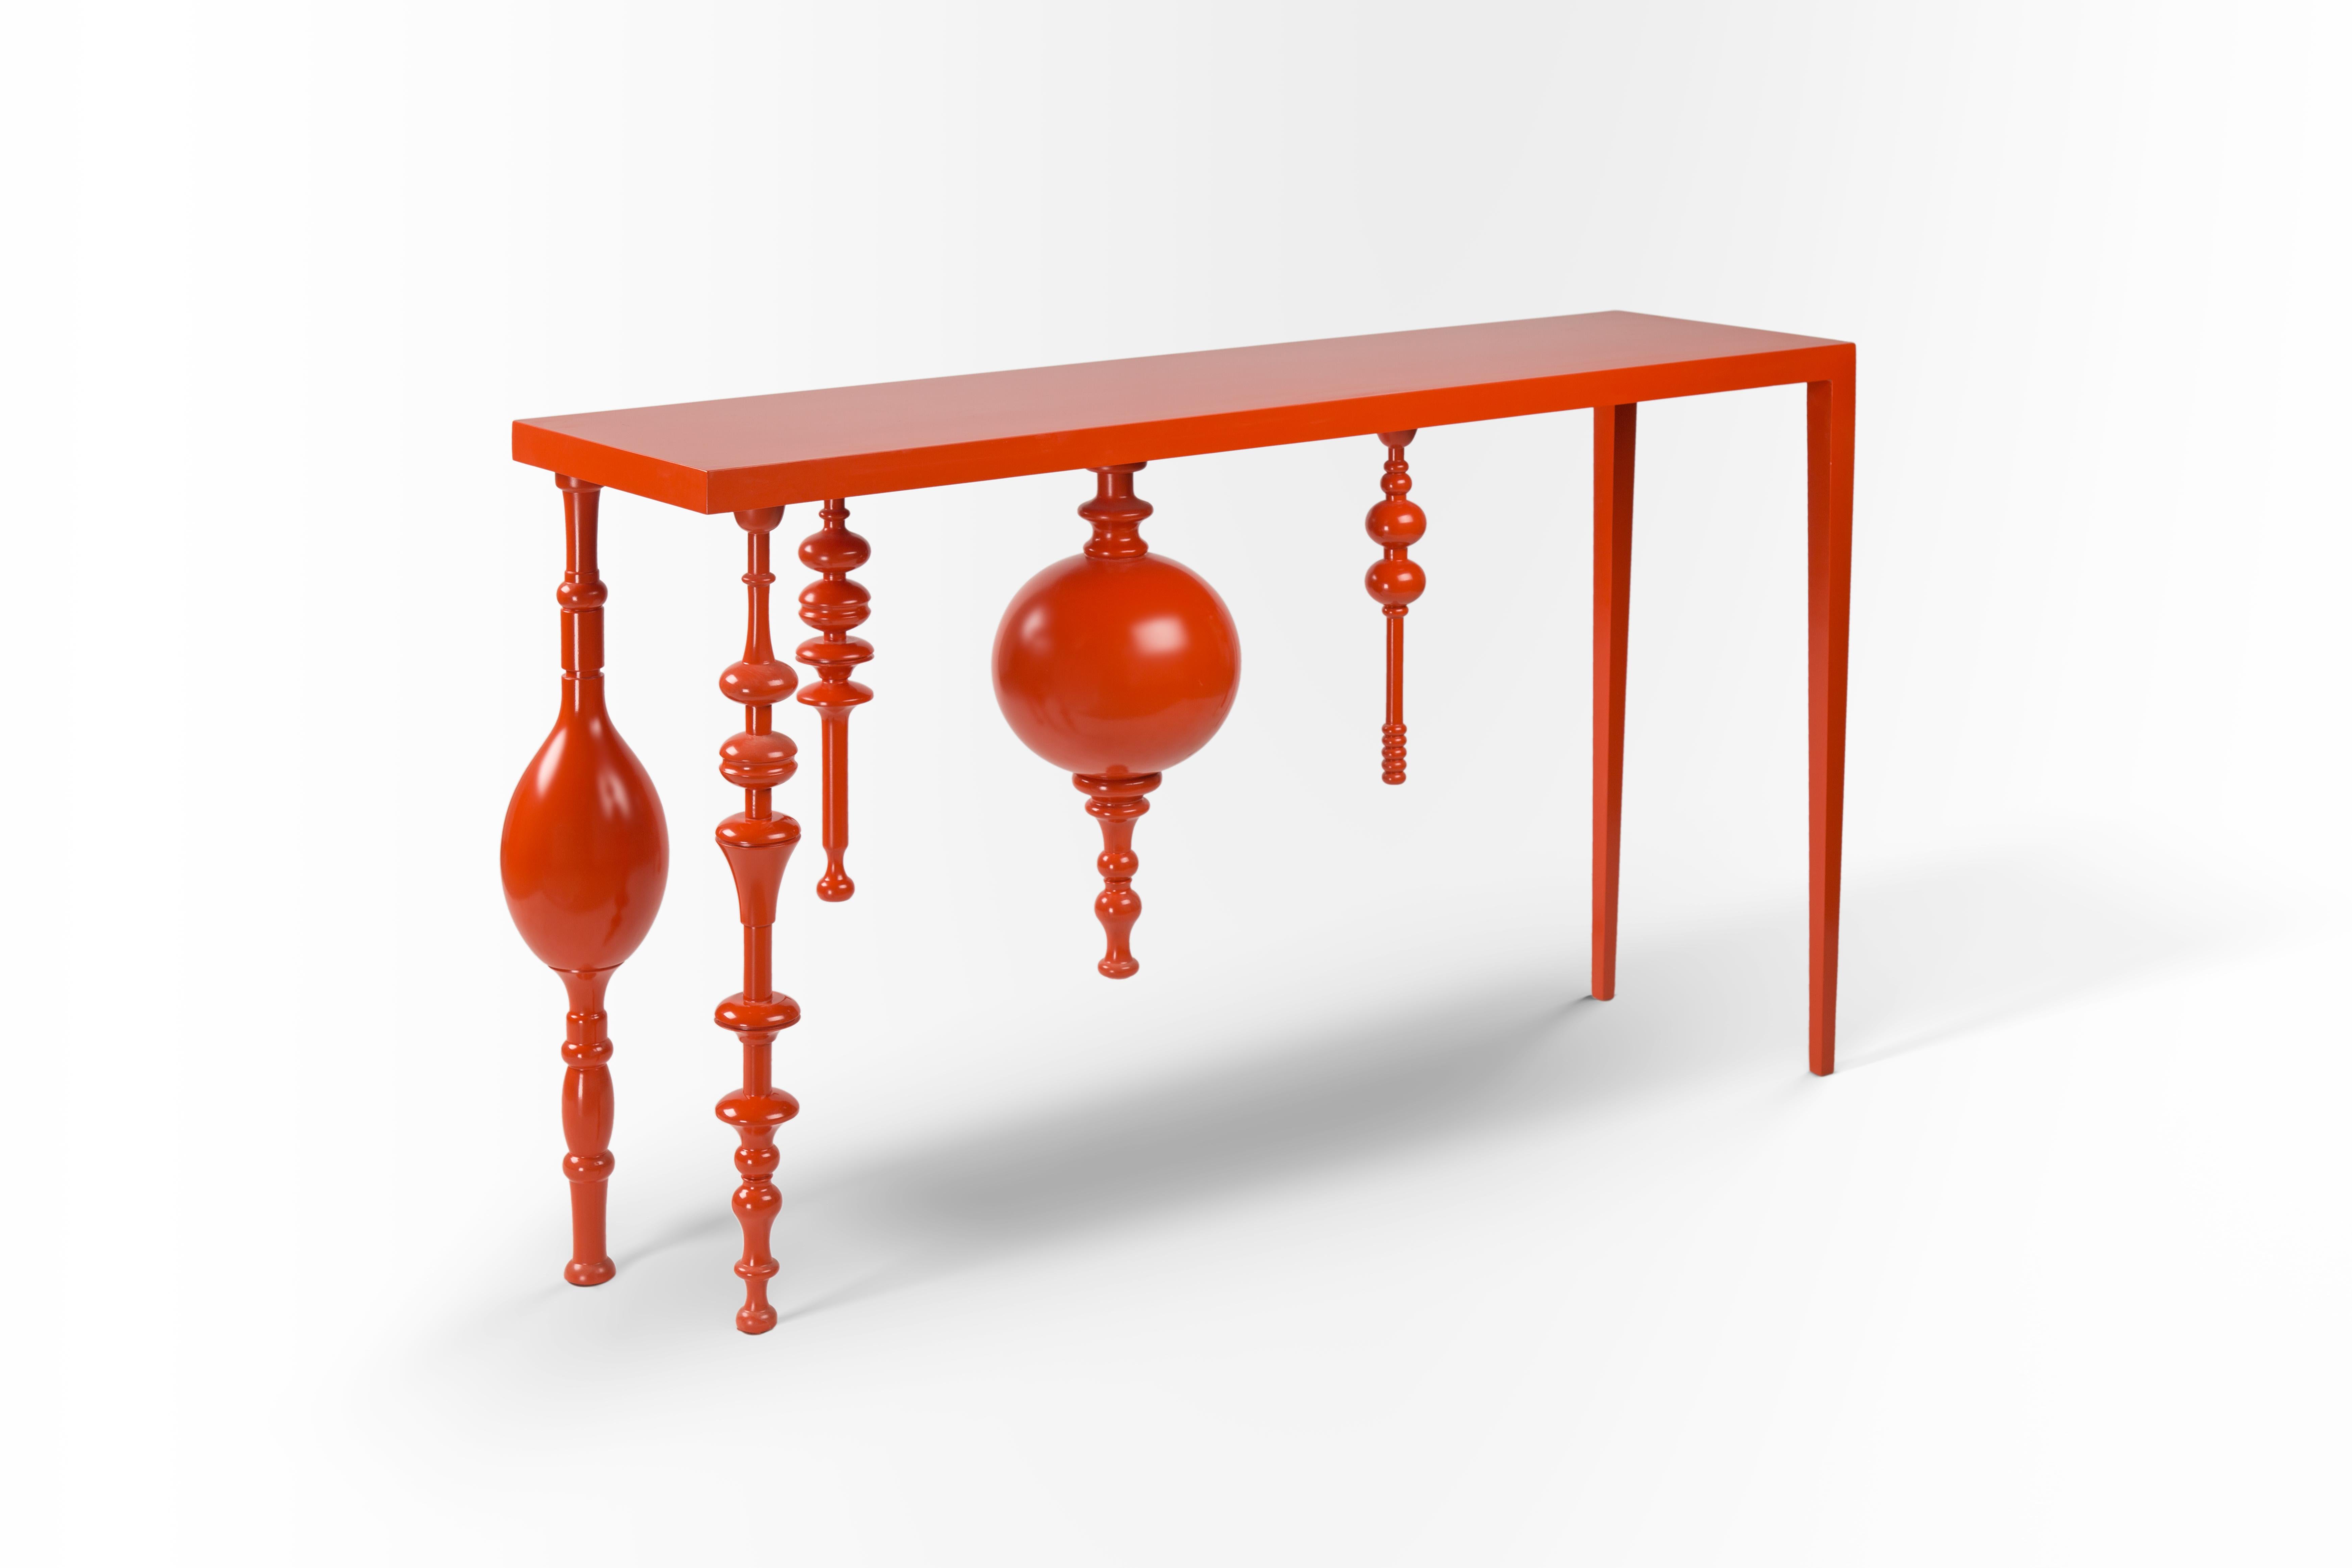 Arabesque asymétrique, console inspirée en bois laqué orange vif.
Le design de notre console Modern Meets Heritage fait un clin d'œil à l'artisanat islamique traditionnel. Ses pieds sont inspirés de l'arabesque et magnifiquement rainurés pour